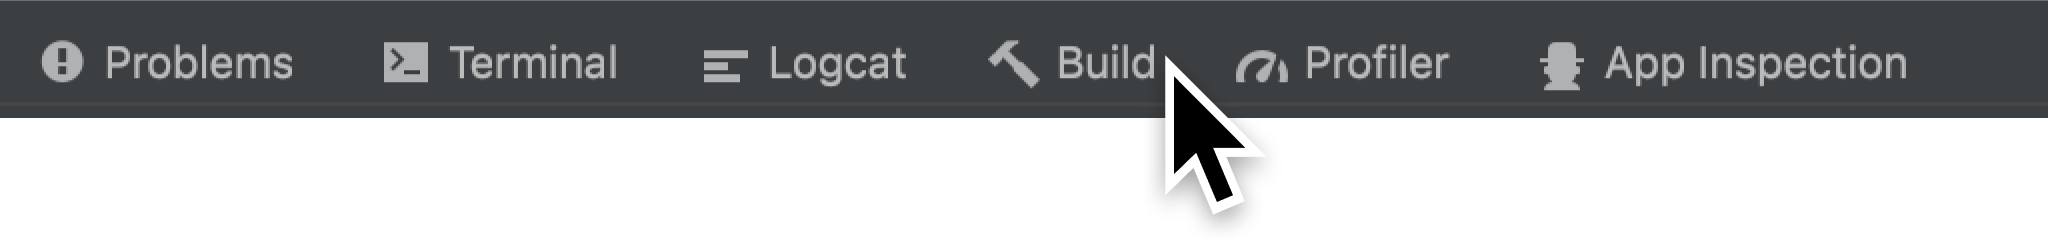 Android Studio 底部的“Build”标签页